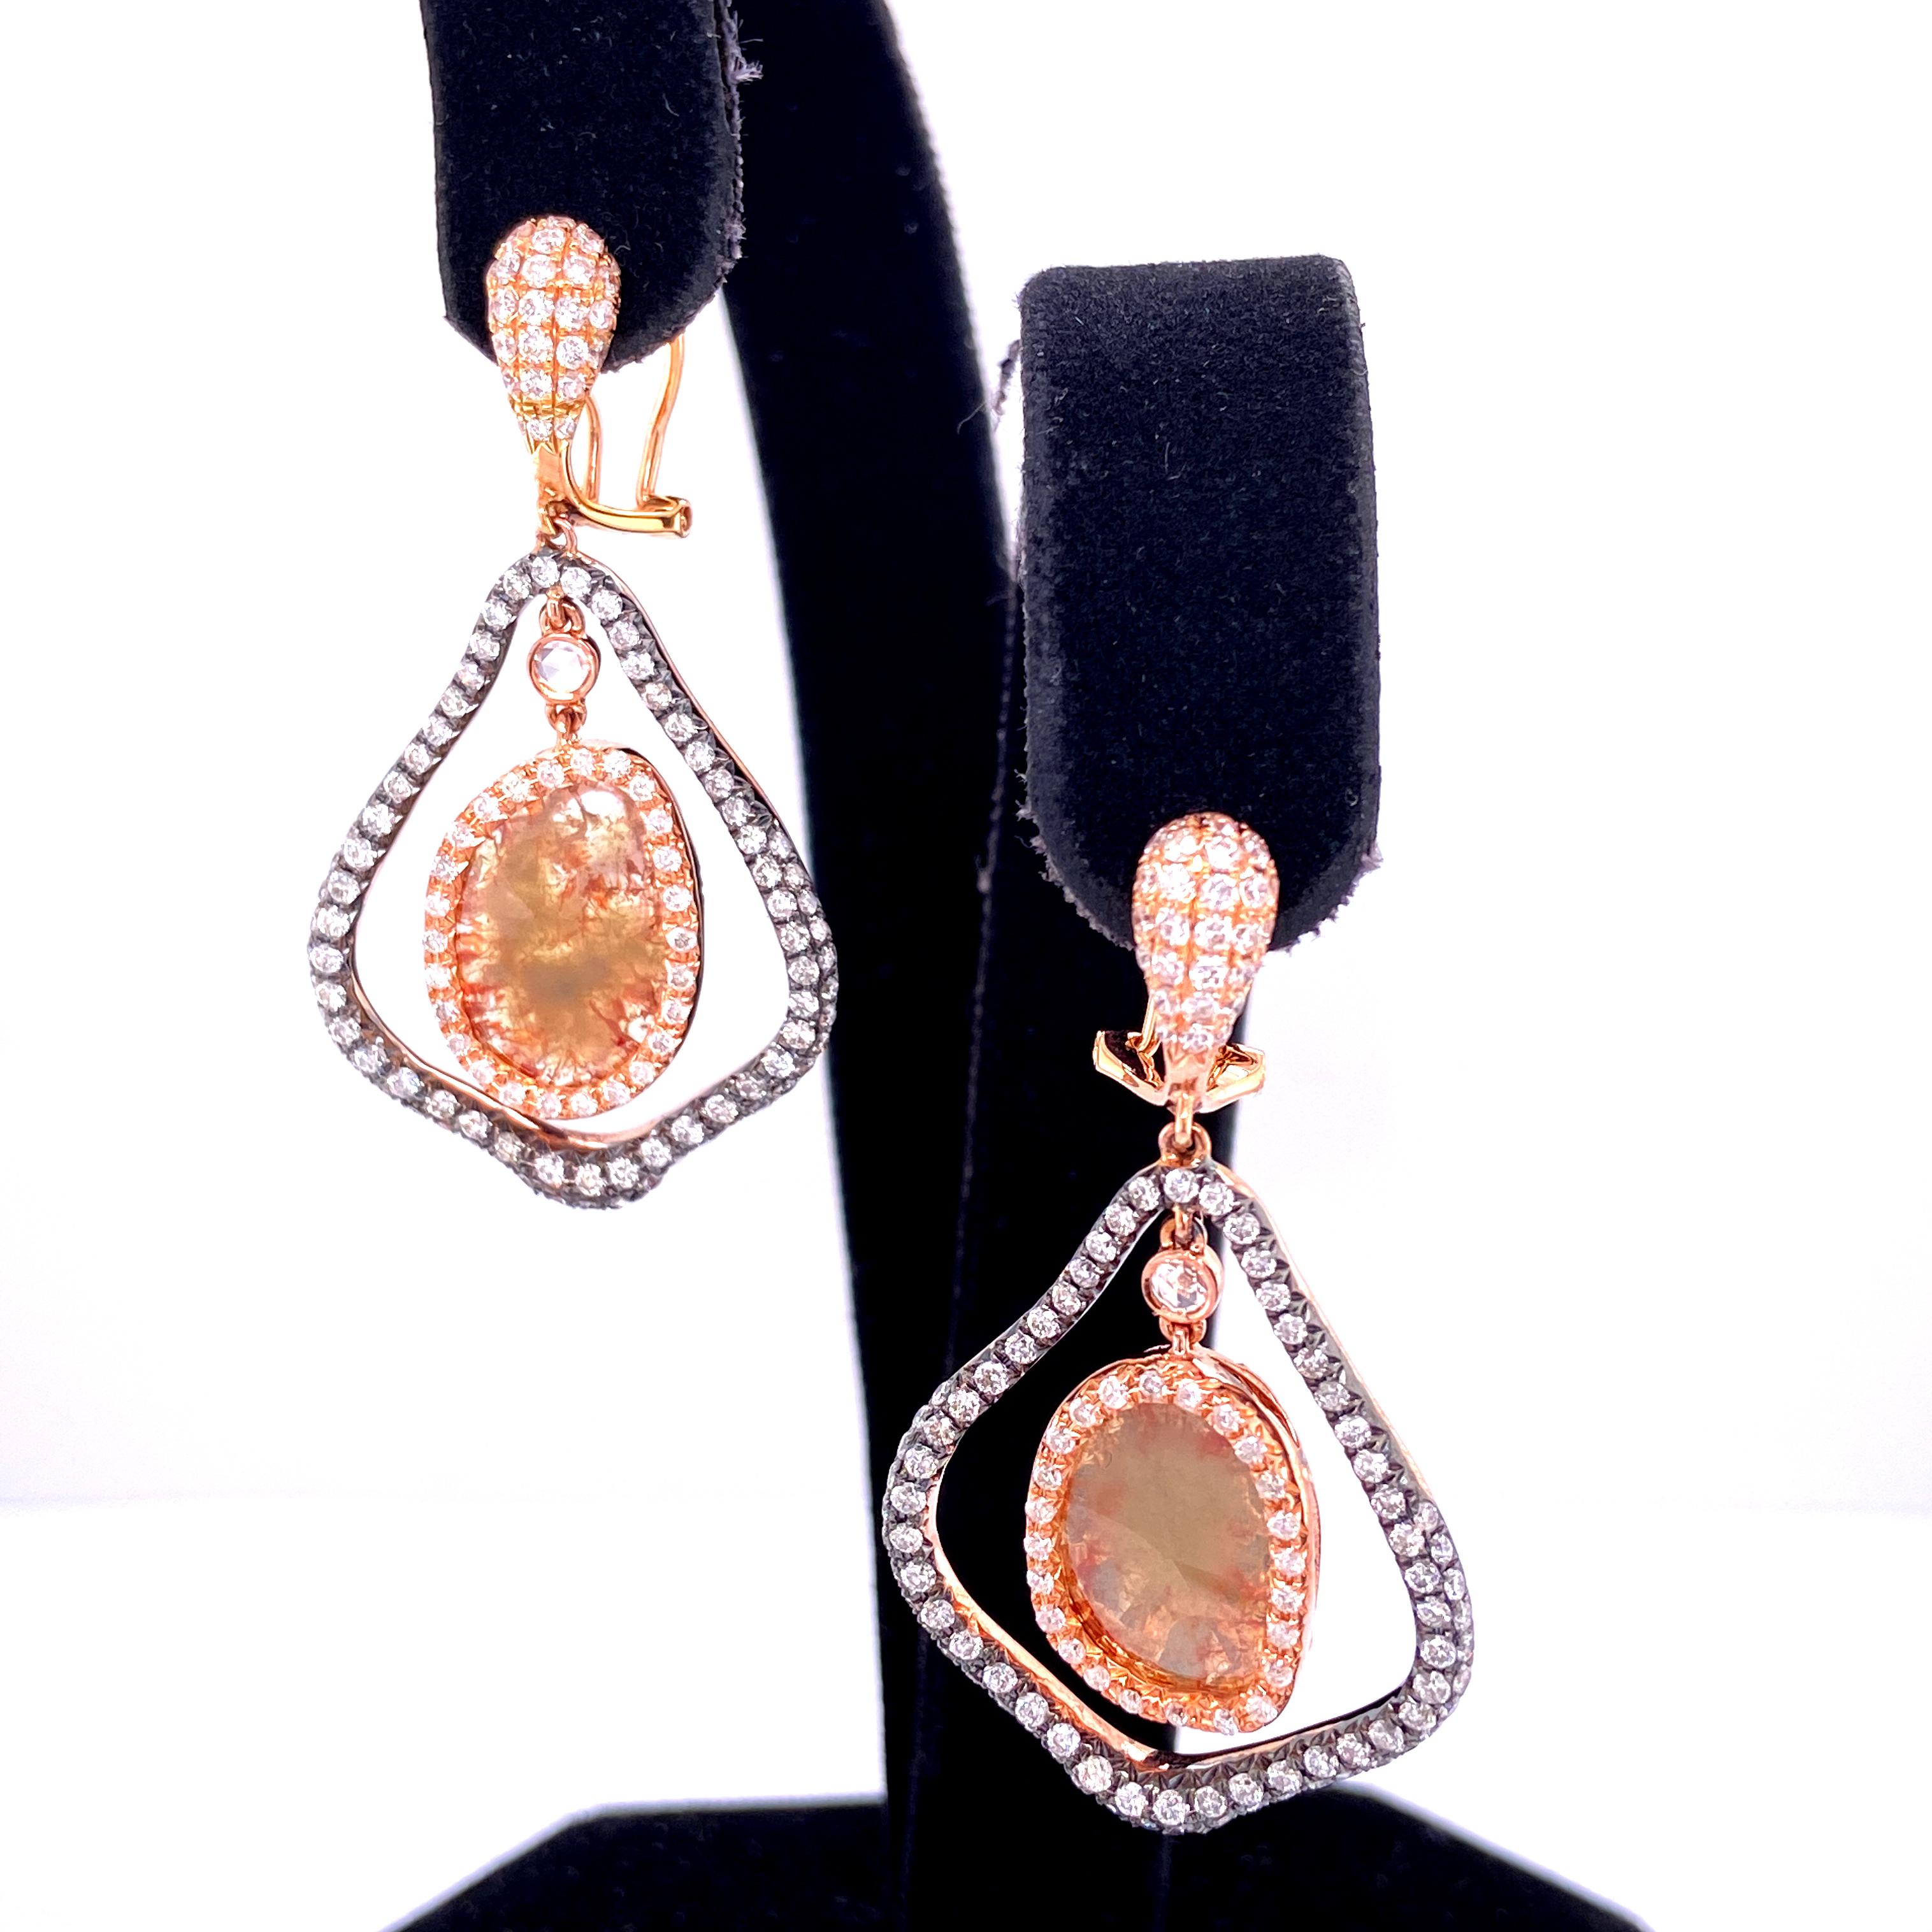 Ohrringe aus Gelbgold mit natürlichen Fancy-Diamanten und weißen Diamanten:

Ein einzigartiges Paar Ohrringe mit zwei natürlichen, farbigen Diamanten mit einem Gewicht von 3,04 Karat, umgeben von weißen, runden Brillanten mit einem Gewicht von 2,30